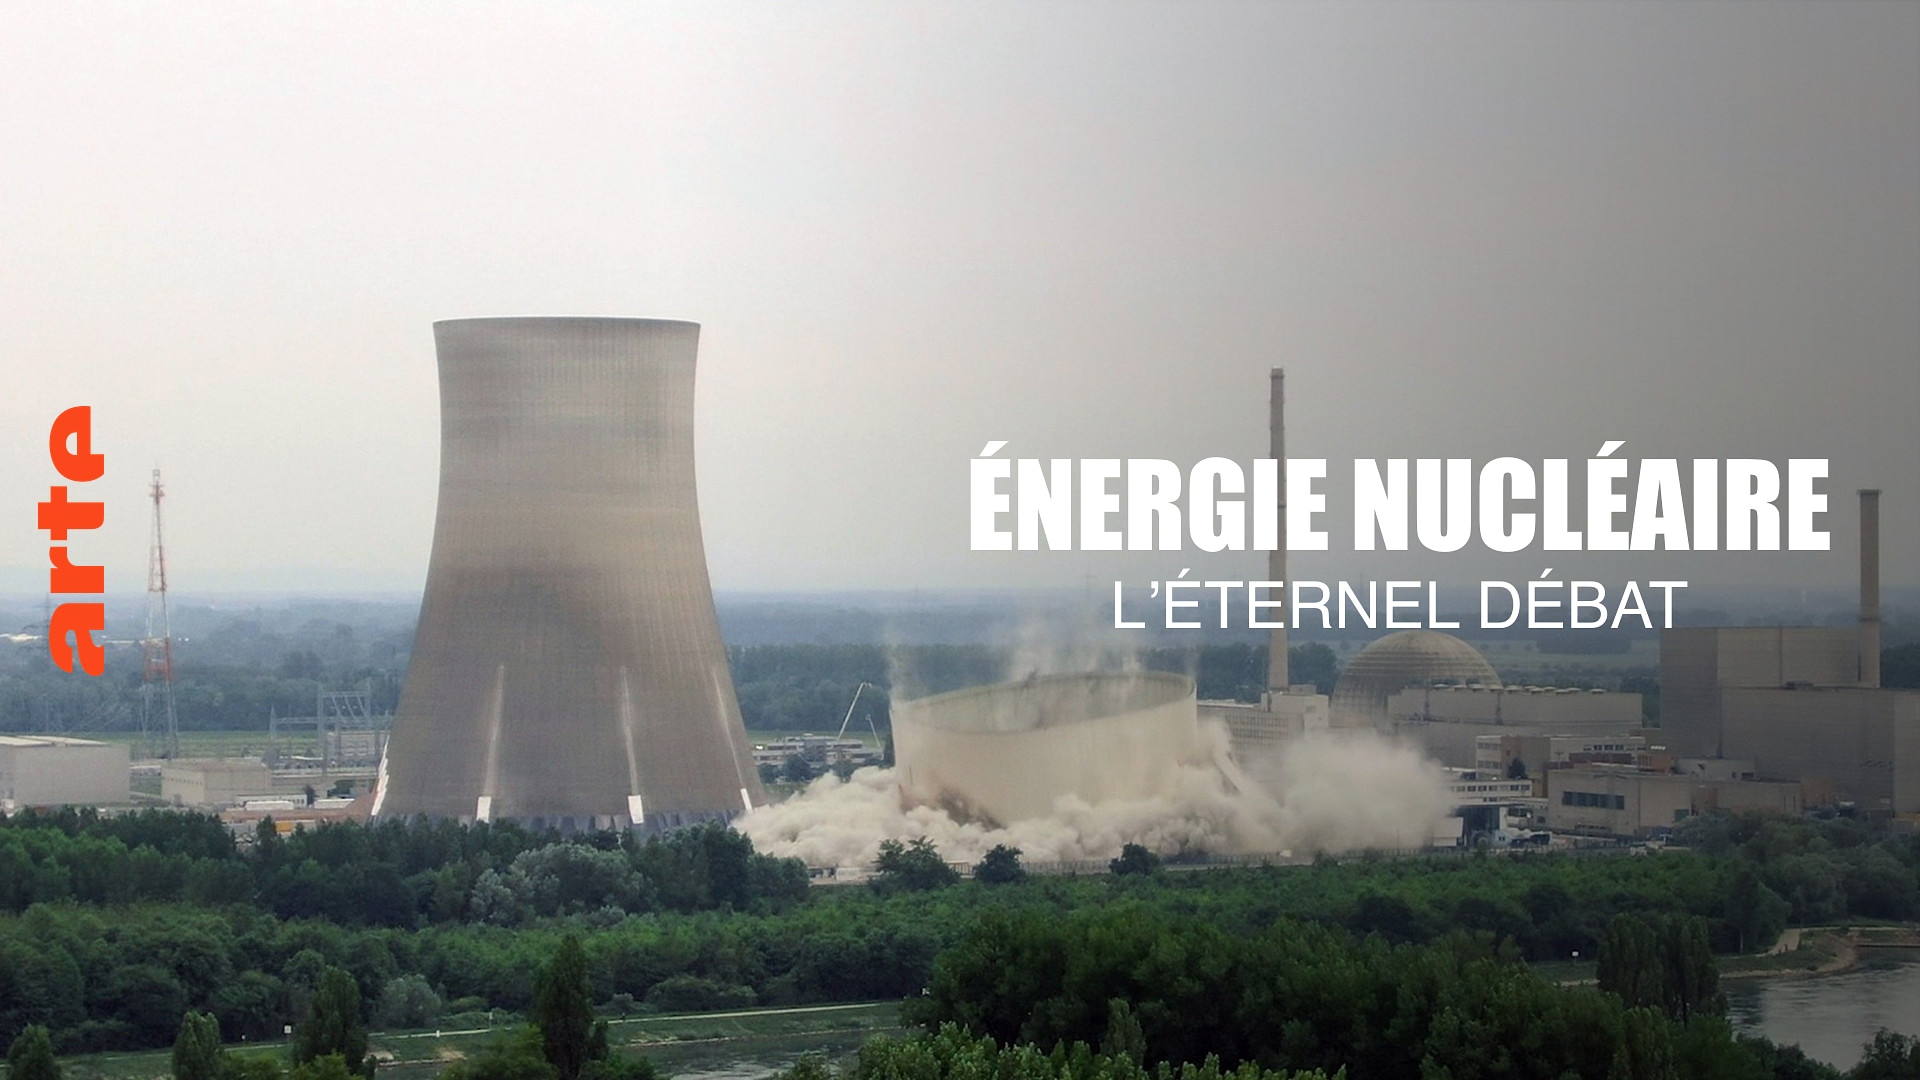 Énergie nucléaire - Lʼéternel débat - Regarder le documentaire complet | ARTE